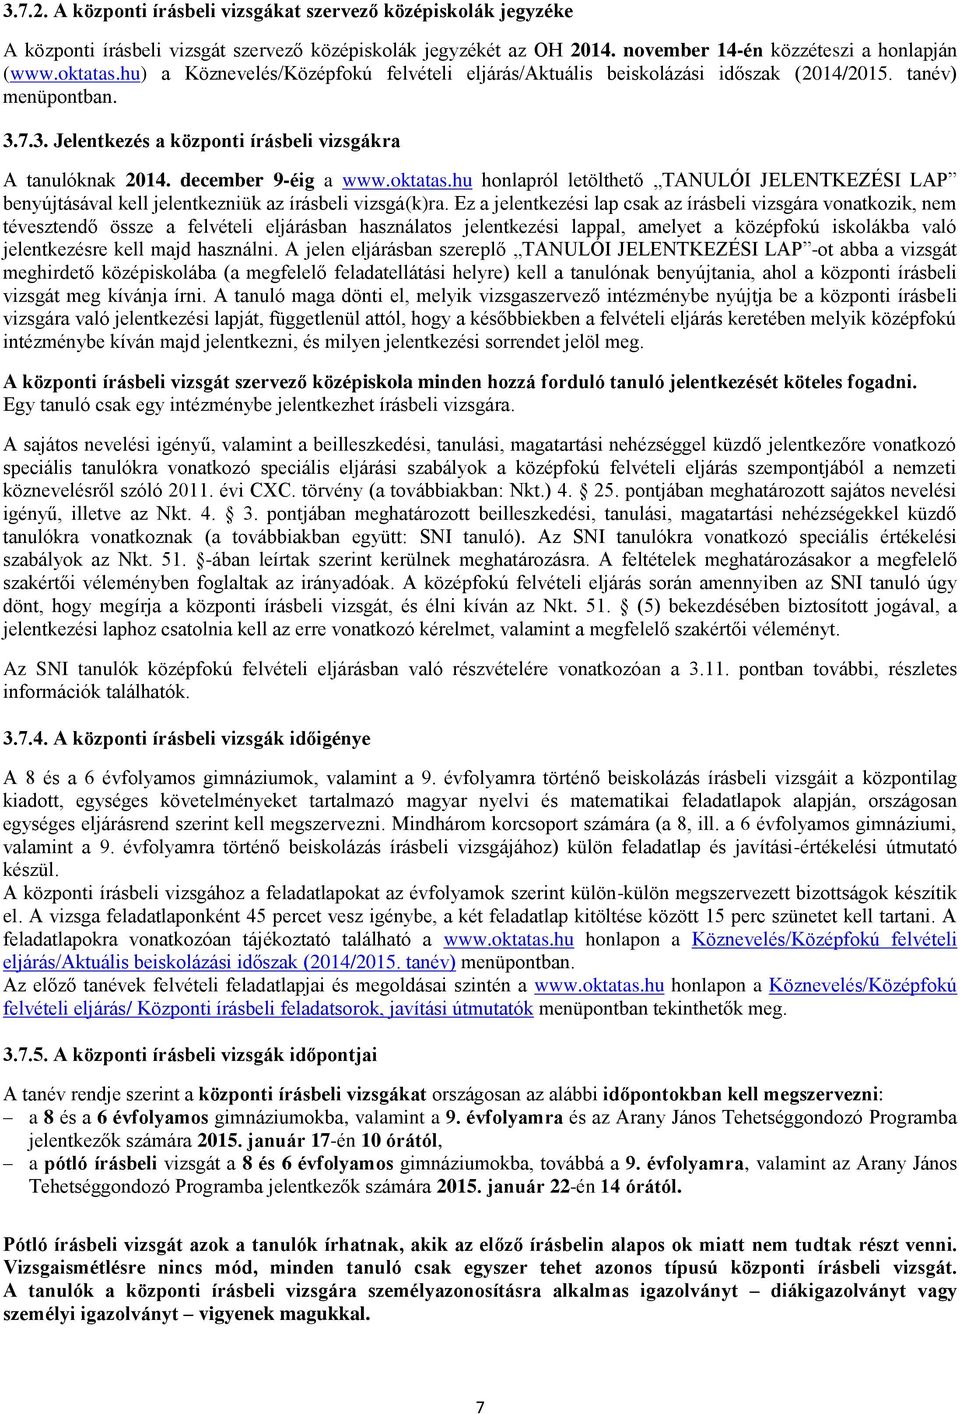 oktatas.hu honlapról letölthető TANULÓI JELENTKEZÉSI LAP benyújtásával kell jelentkezniük az írásbeli vizsgá(k)ra.